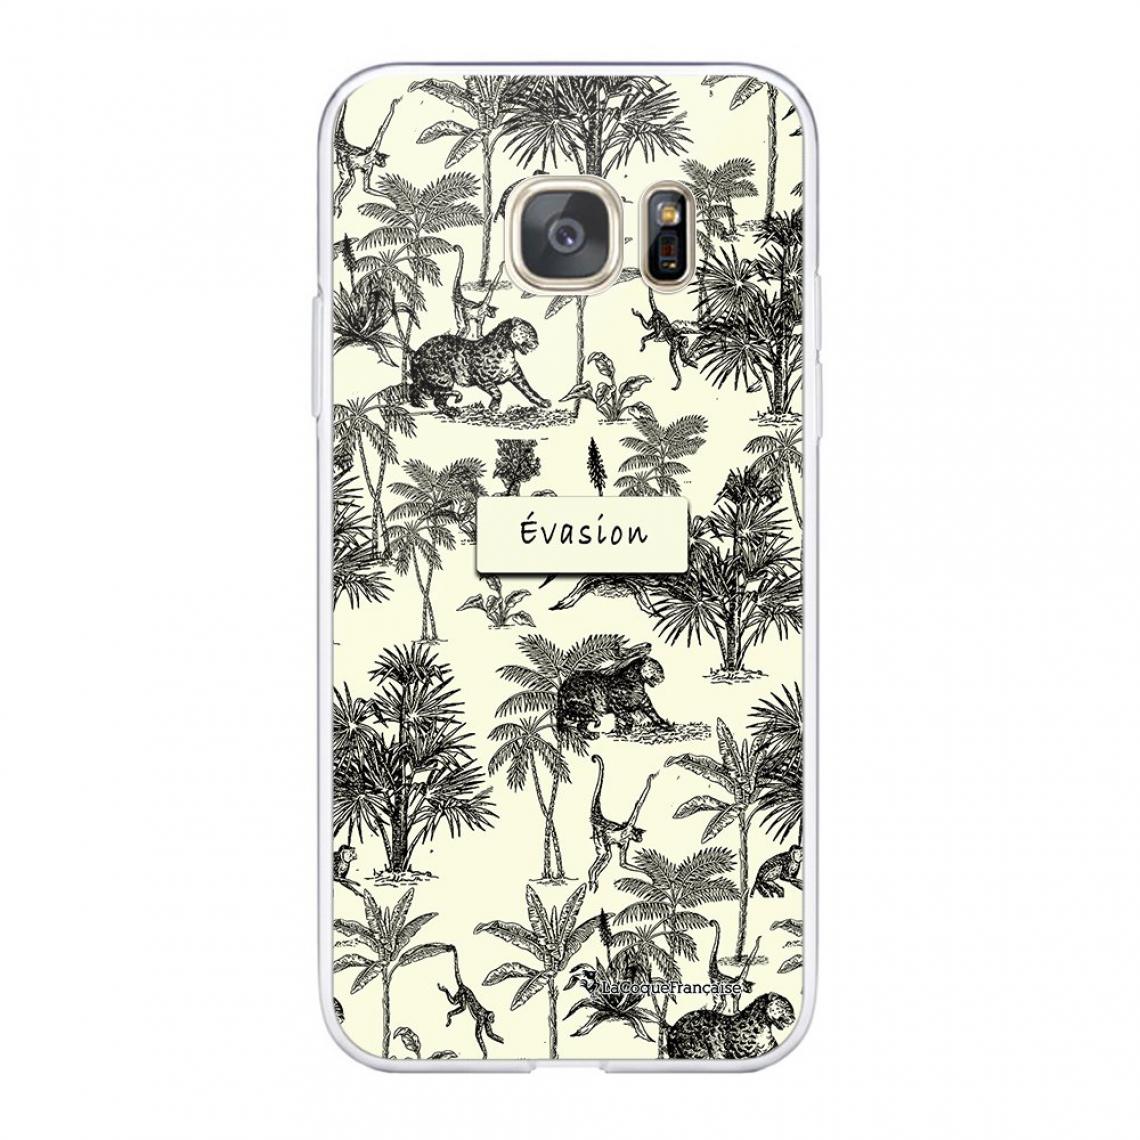 La Coque Francaise - Coque Samsung Galaxy S7 360 intégrale avant arrière transparente - Coque, étui smartphone